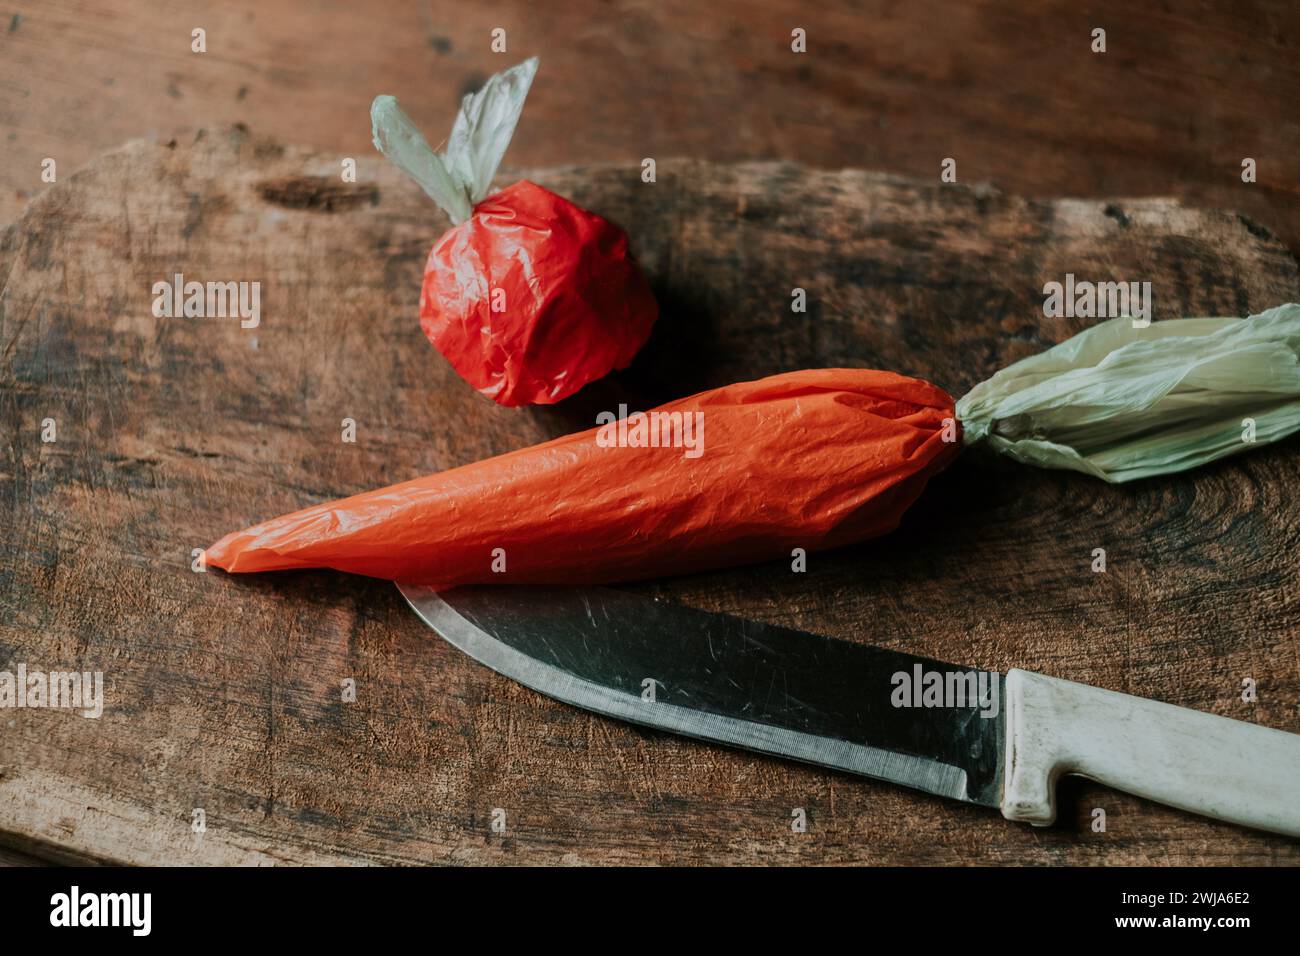 Ein roter Plastikbeutel in Form einer Tomate und ein orangener Beutel, der einer Karotte ähnelt, neben einem Messer auf einem Holzbrett Stockfoto